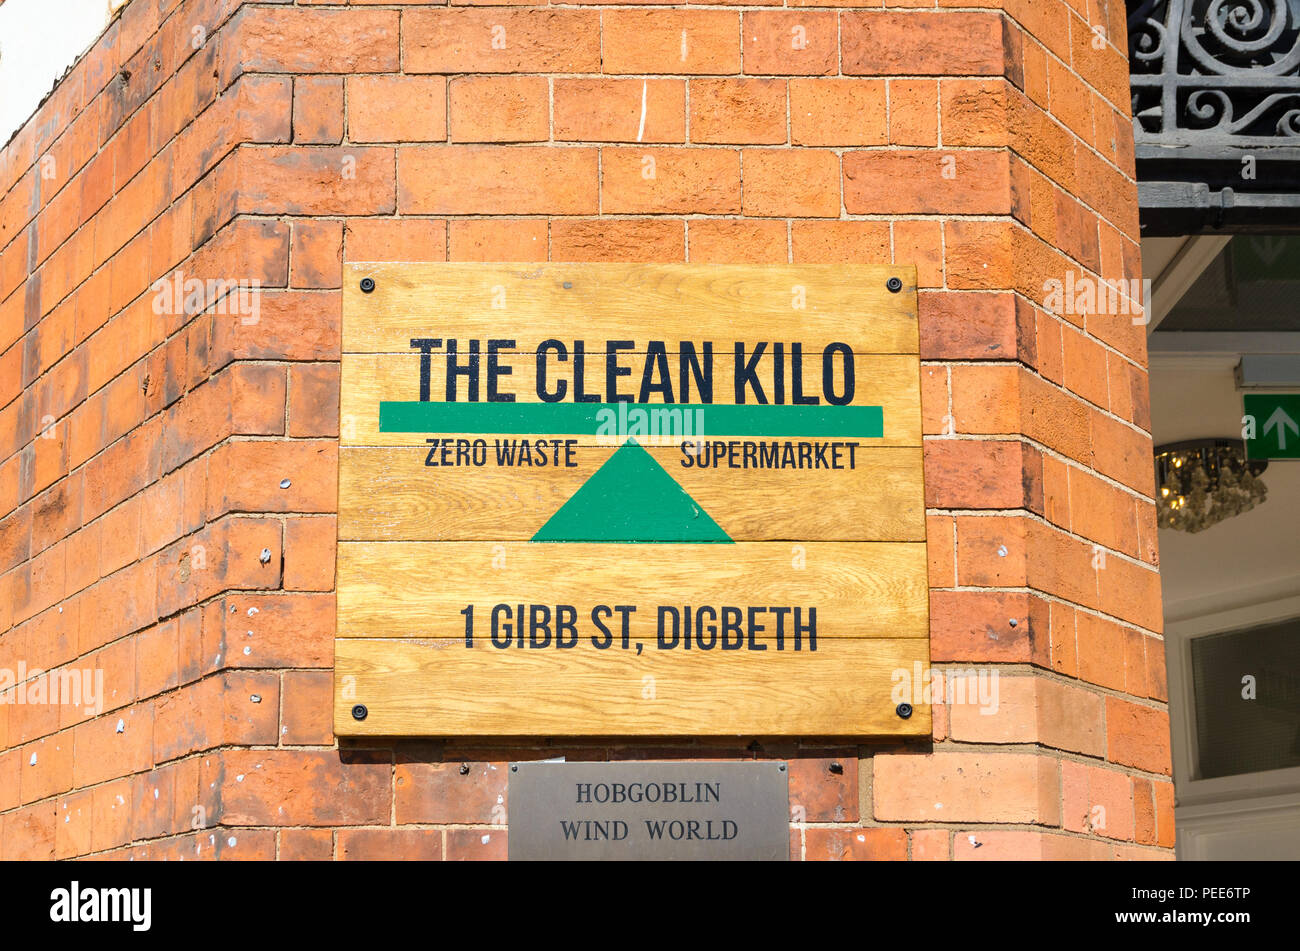 Die saubere Kilo null Abfall Supermarkt und Lebensmittel Shop in der Gibb, digbeth Street, Birmingham Stockfoto